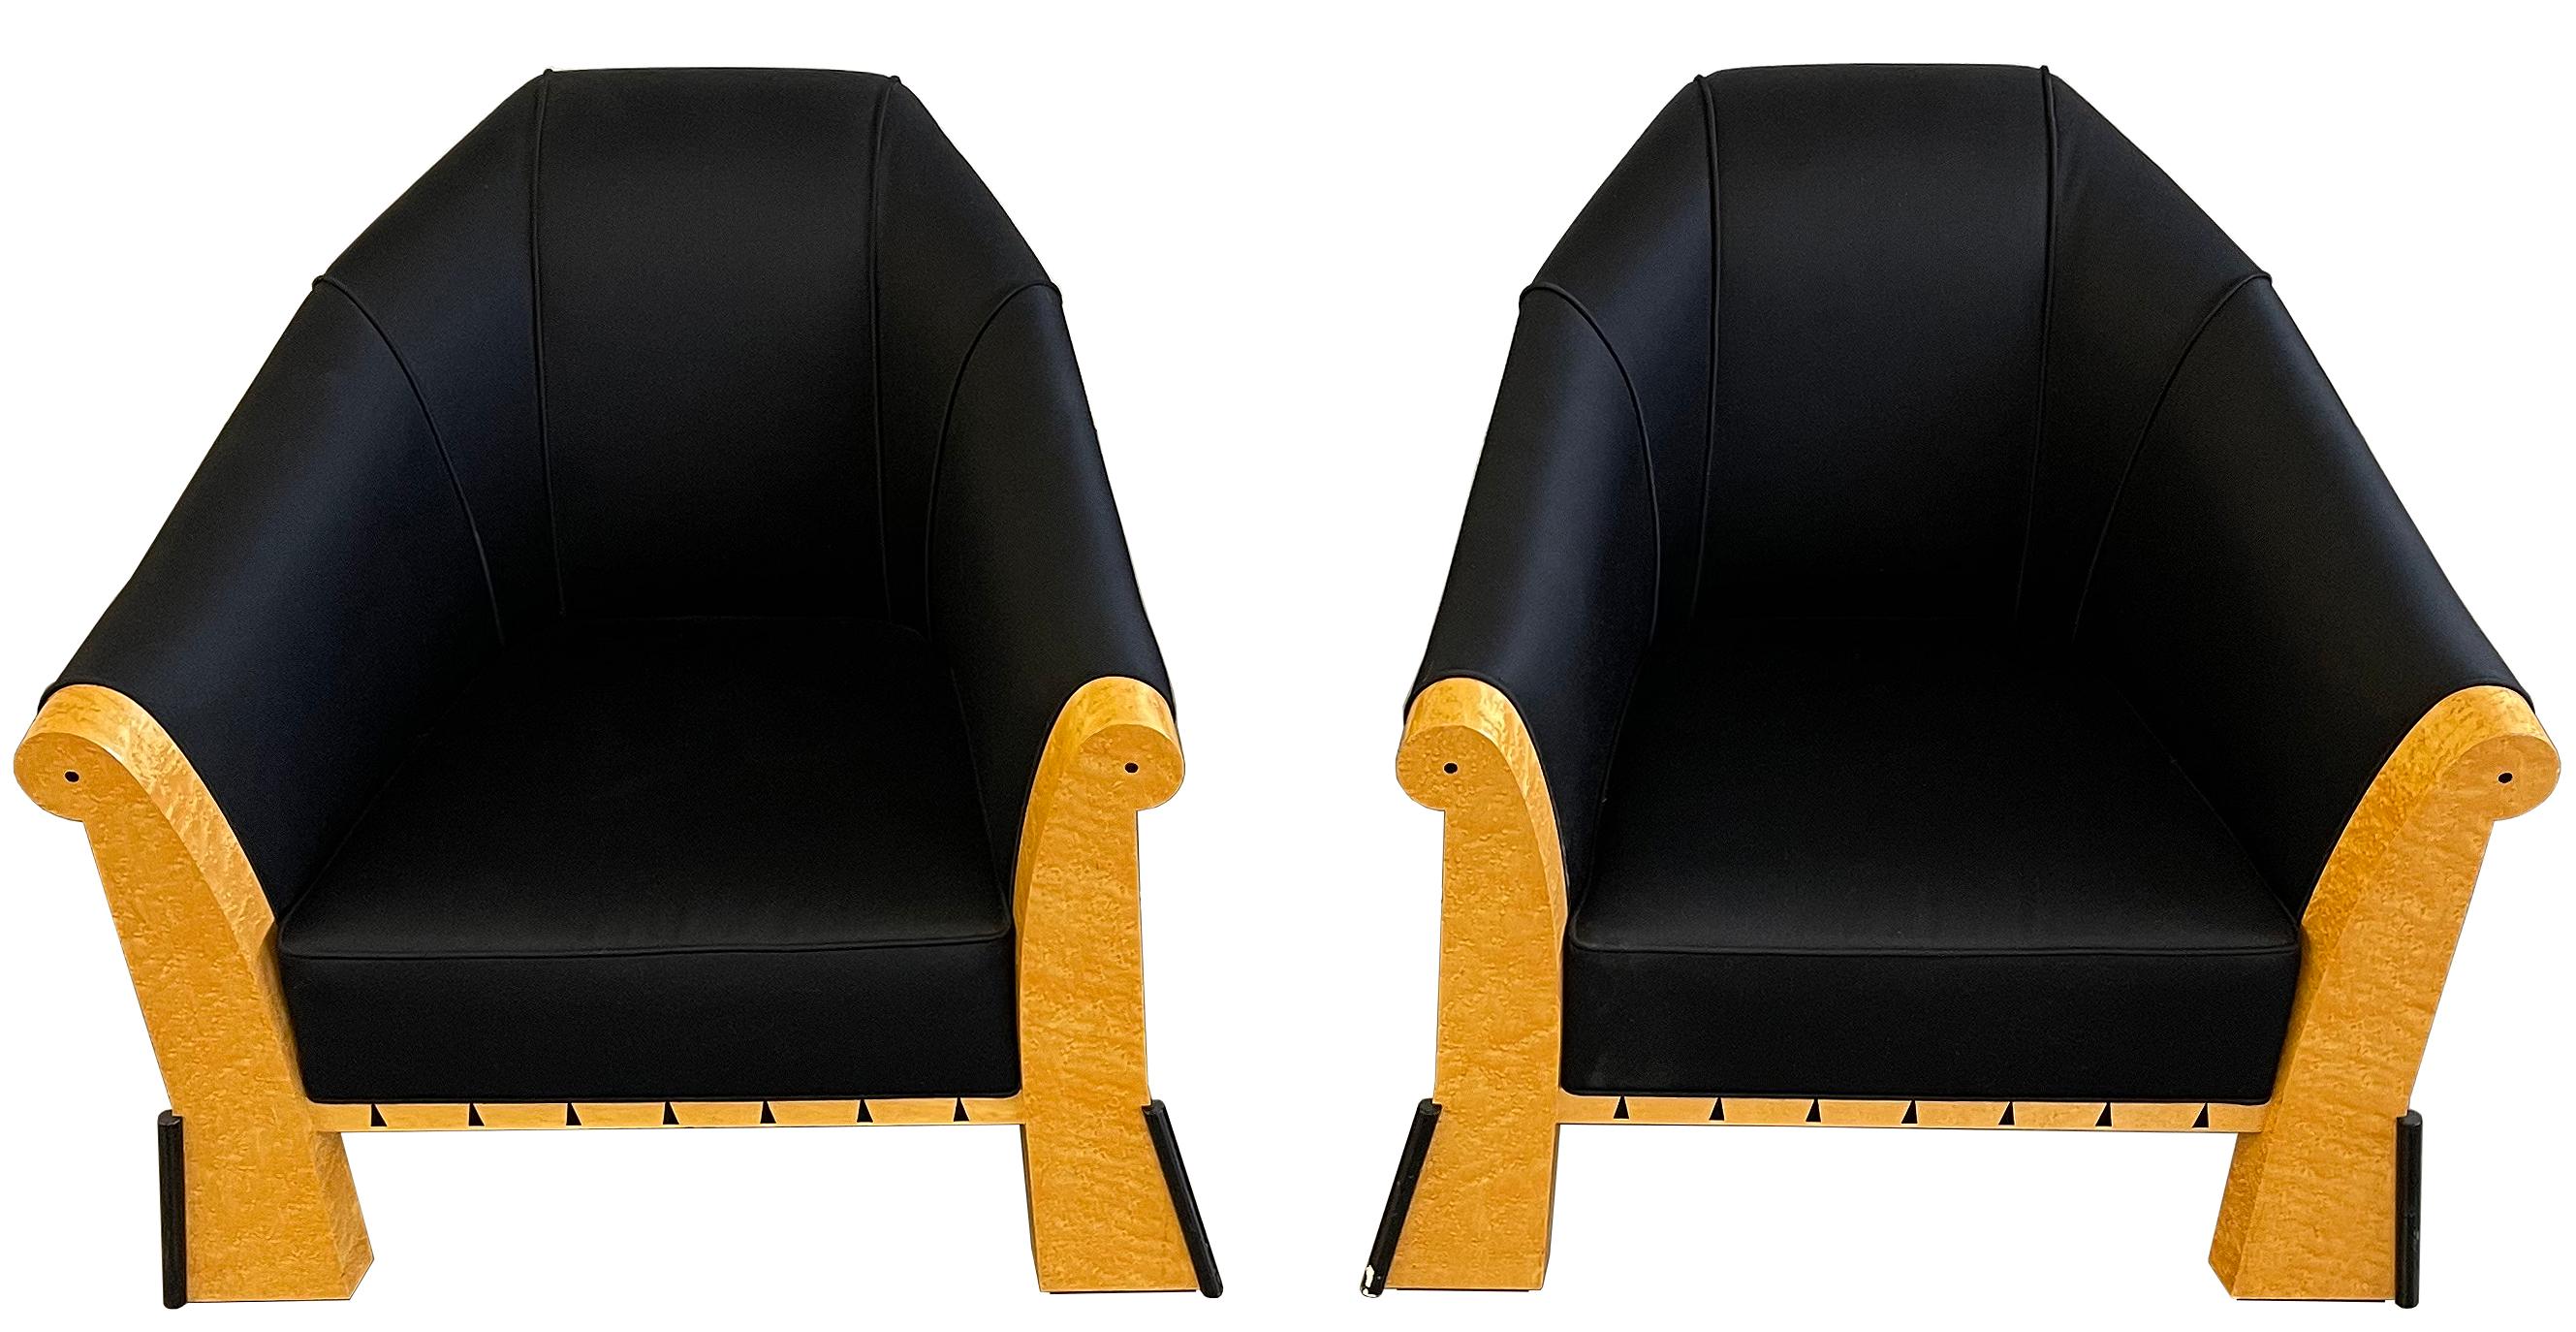 Ein erstaunliches Paar postmoderner Loungesessel des legendären Designers Michael Graves, um 1980
Diese Stühle wurden mit den hochwertigsten Materialien und der besten Handwerkskunst hergestellt. 

Ein seltenes Paar in original schwarzem